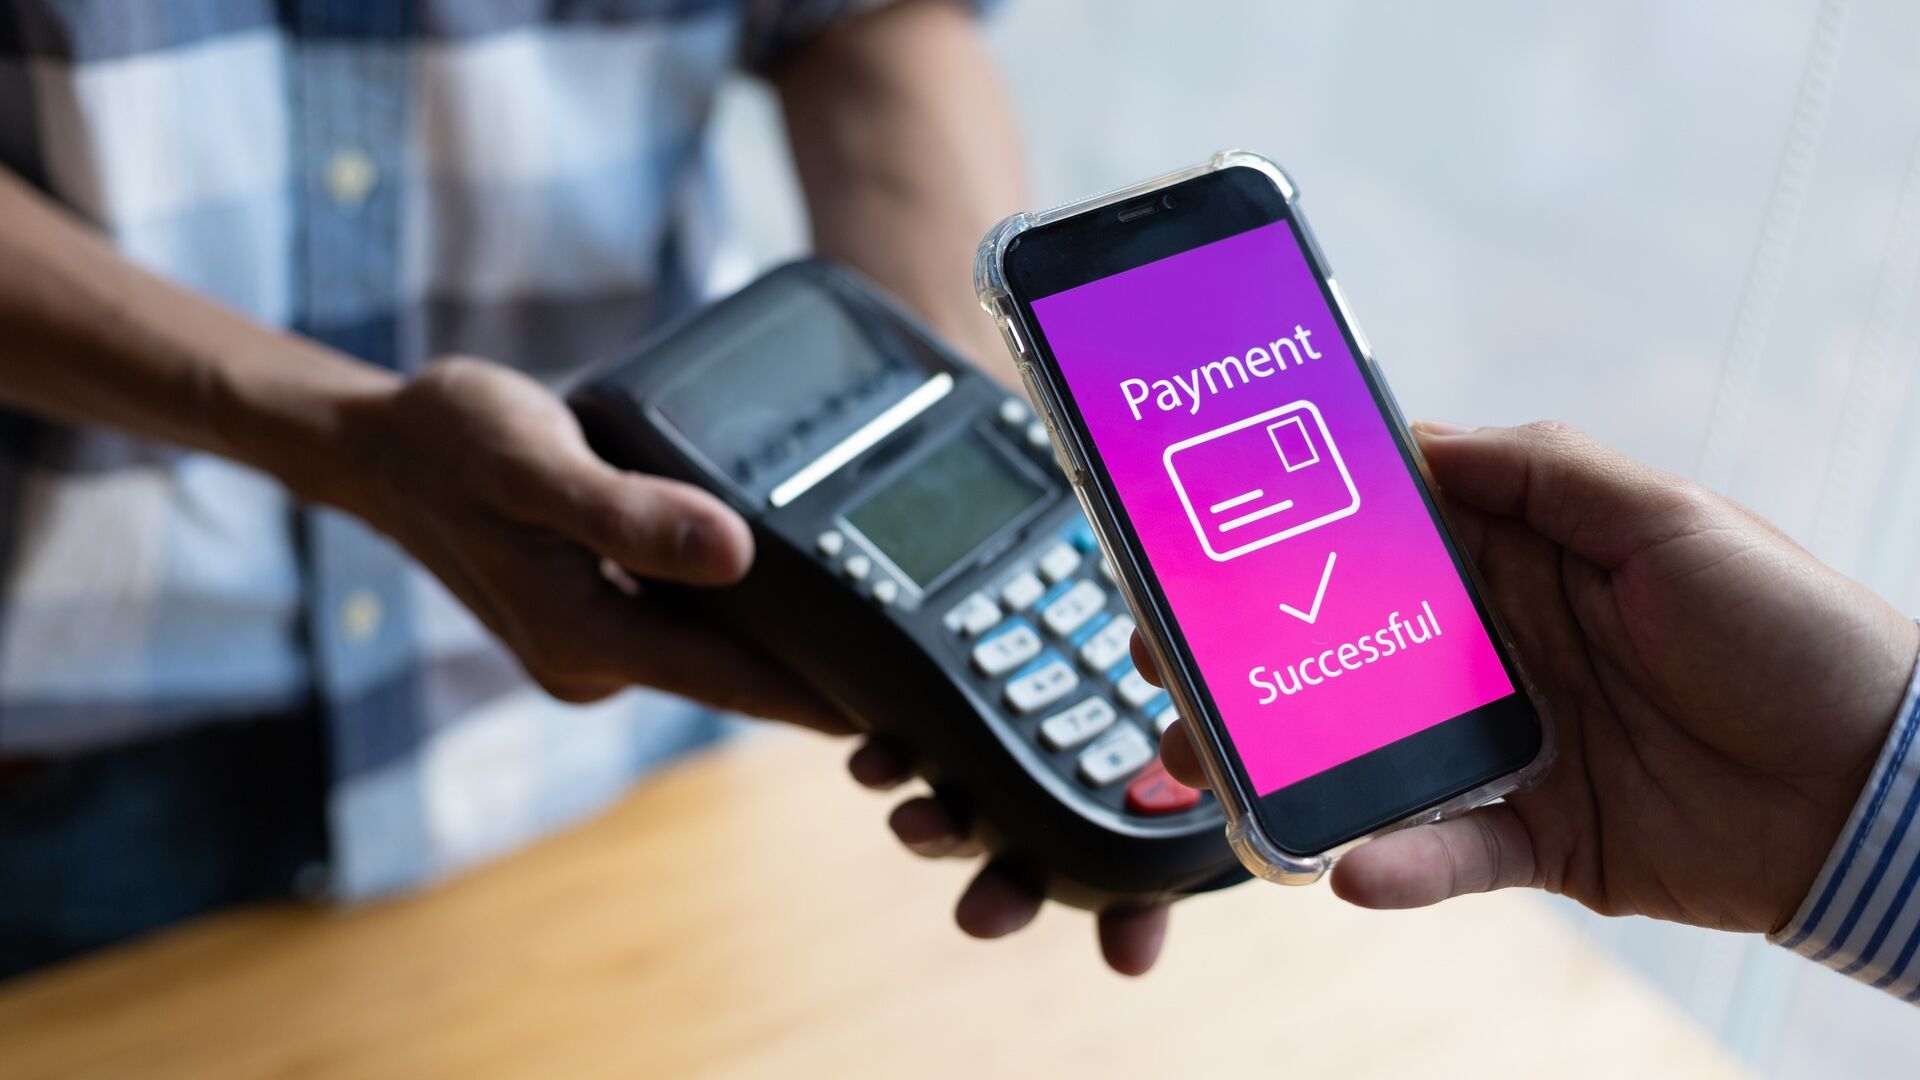 Pagamenti da mobile: i vantaggi del mobile payment devono essere comunicati in modo efficace e i problemi di sicurezza eliminati, in modo da conquistare la fiducia dei consumatori